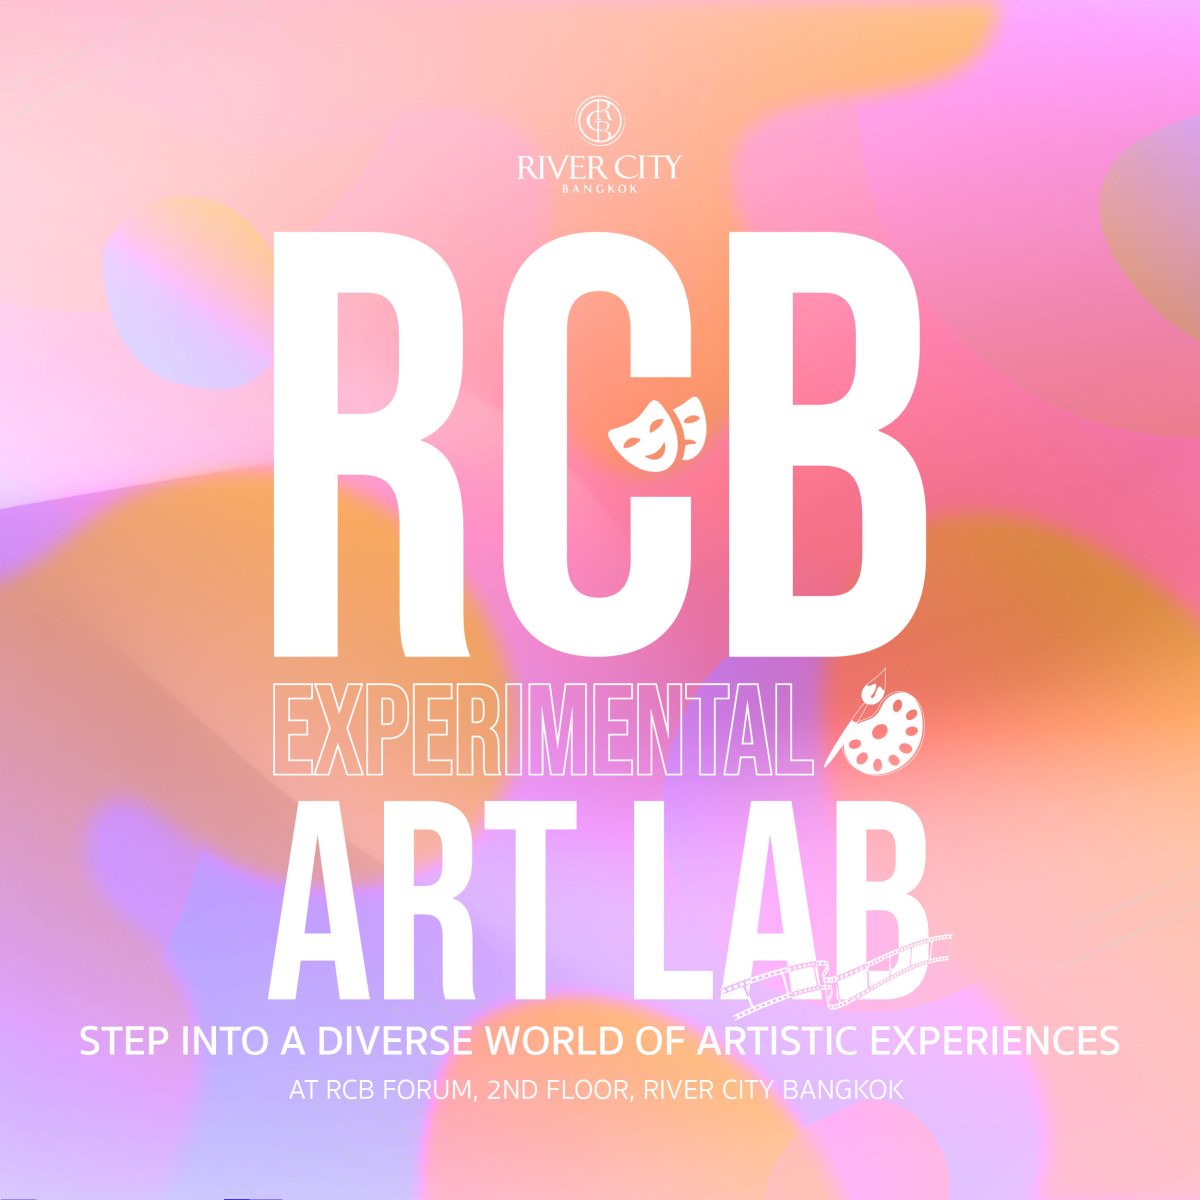 สถานที่ซึ่งทุกจินตนาการสามารถเป็นจริงได้ที่ RCB Experimental Art Lab ริเวอร์ ซิตี้ แบงค็อก